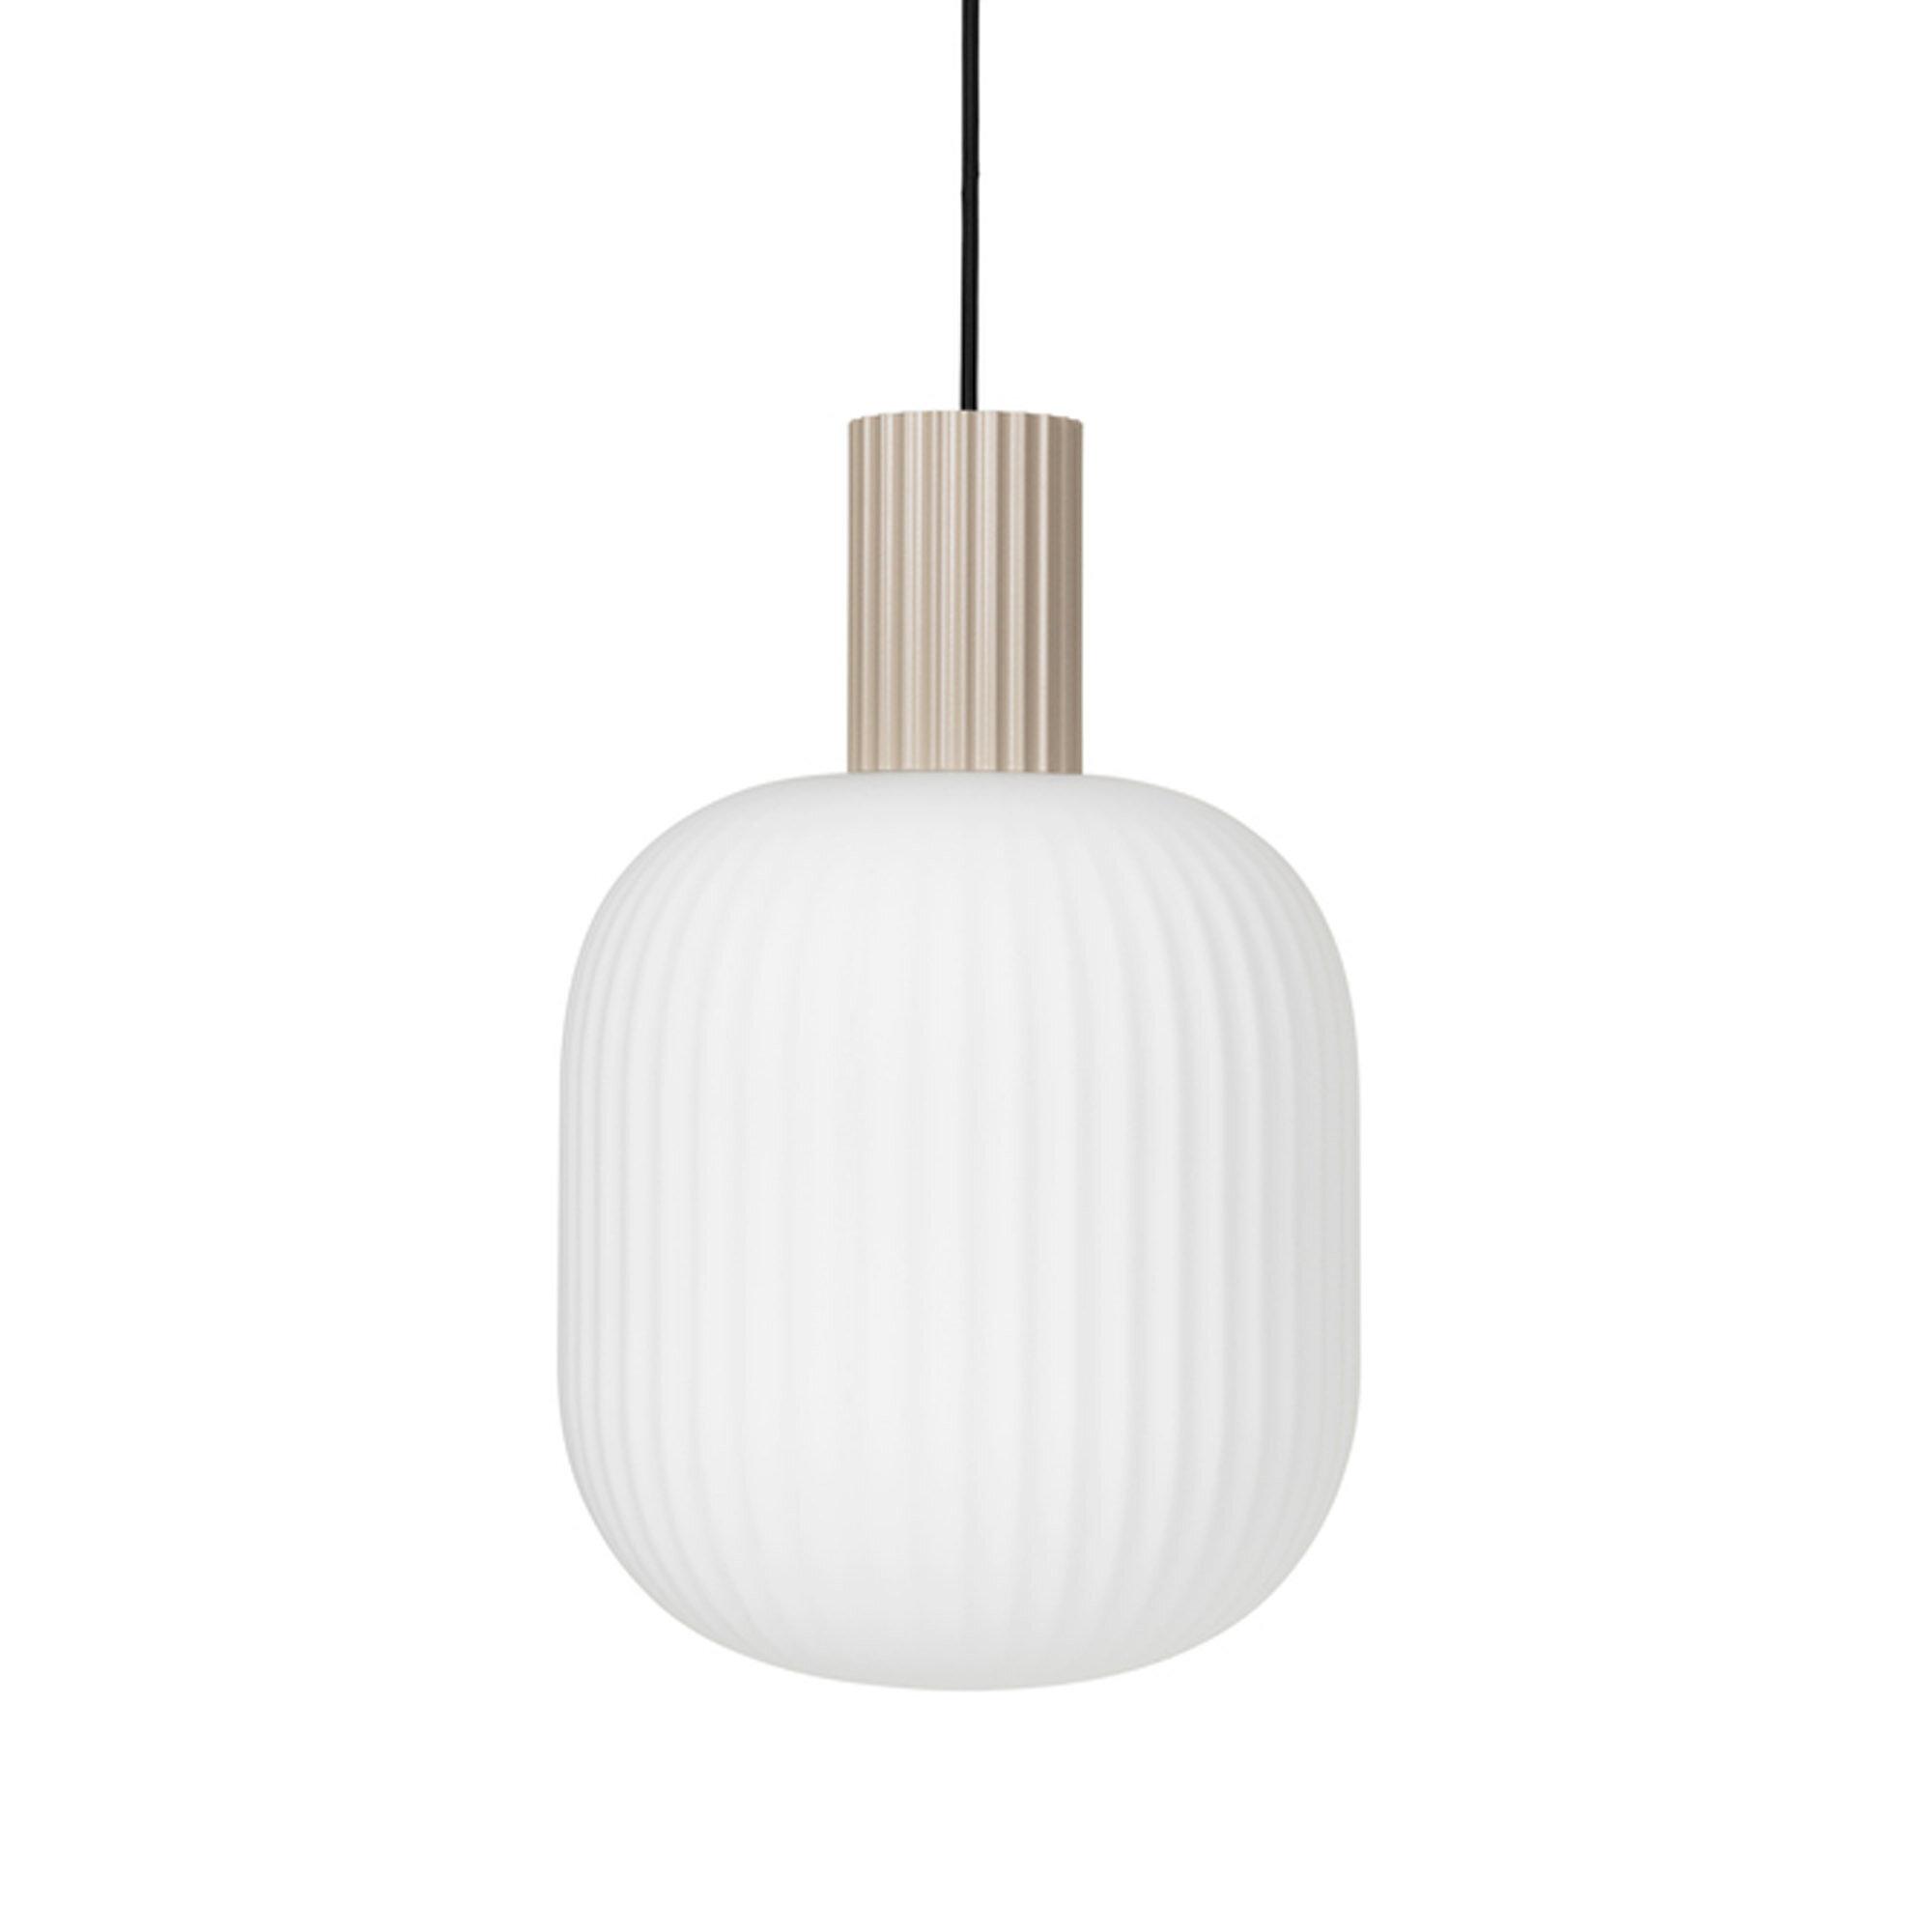  Loft Lampe 'Lolly' fra Broste Copenhagen (Varenr: 60060007)